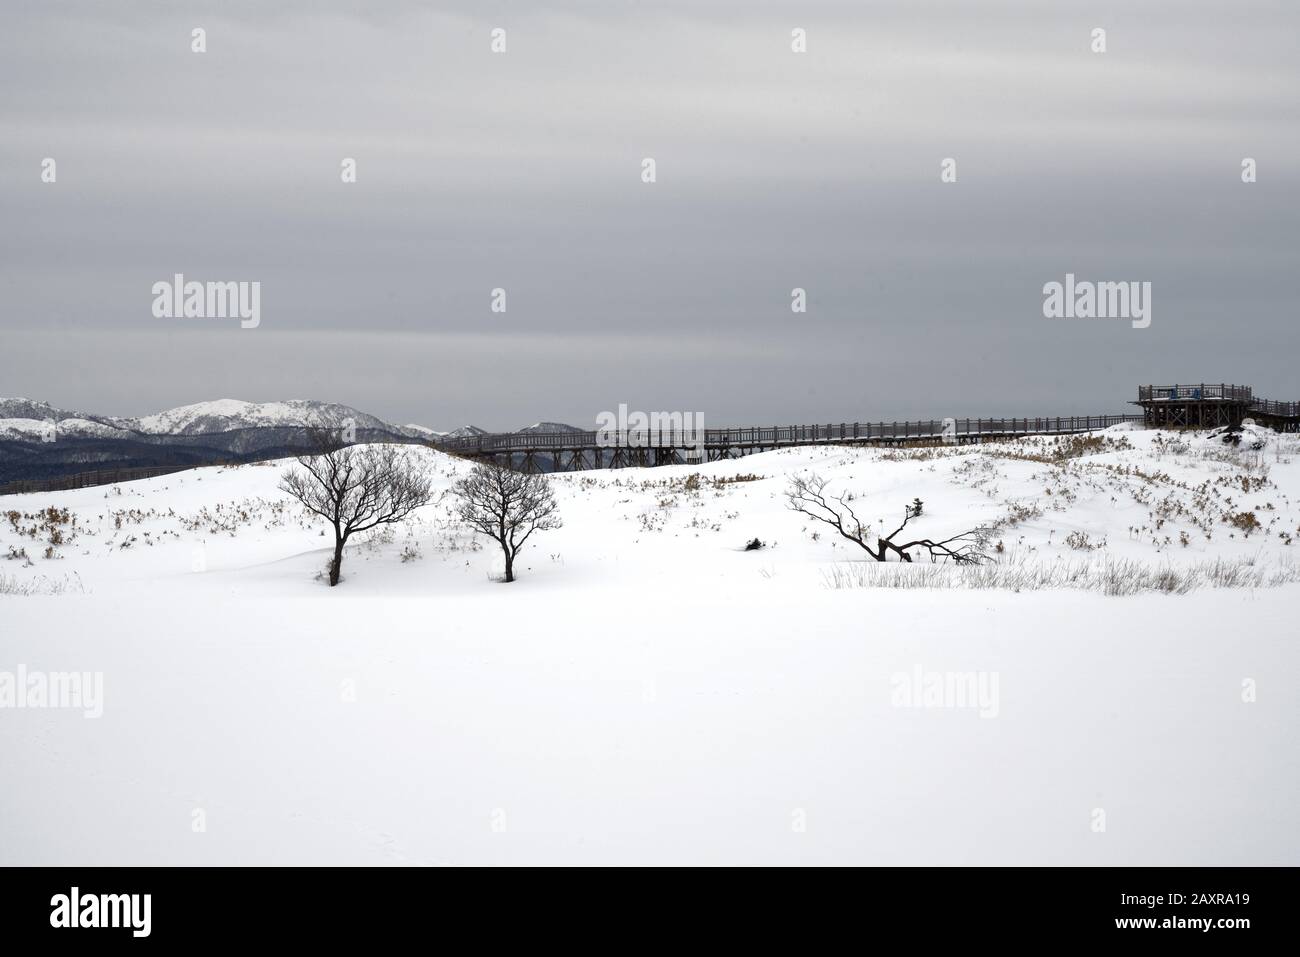 Randonnée dans les cinq lacs de Shiretoko couverts de neige en hiver avec la chaîne de montagnes de Shiretoko et le pont d'observation en arrière-plan, Hokkaido, Japon Banque D'Images